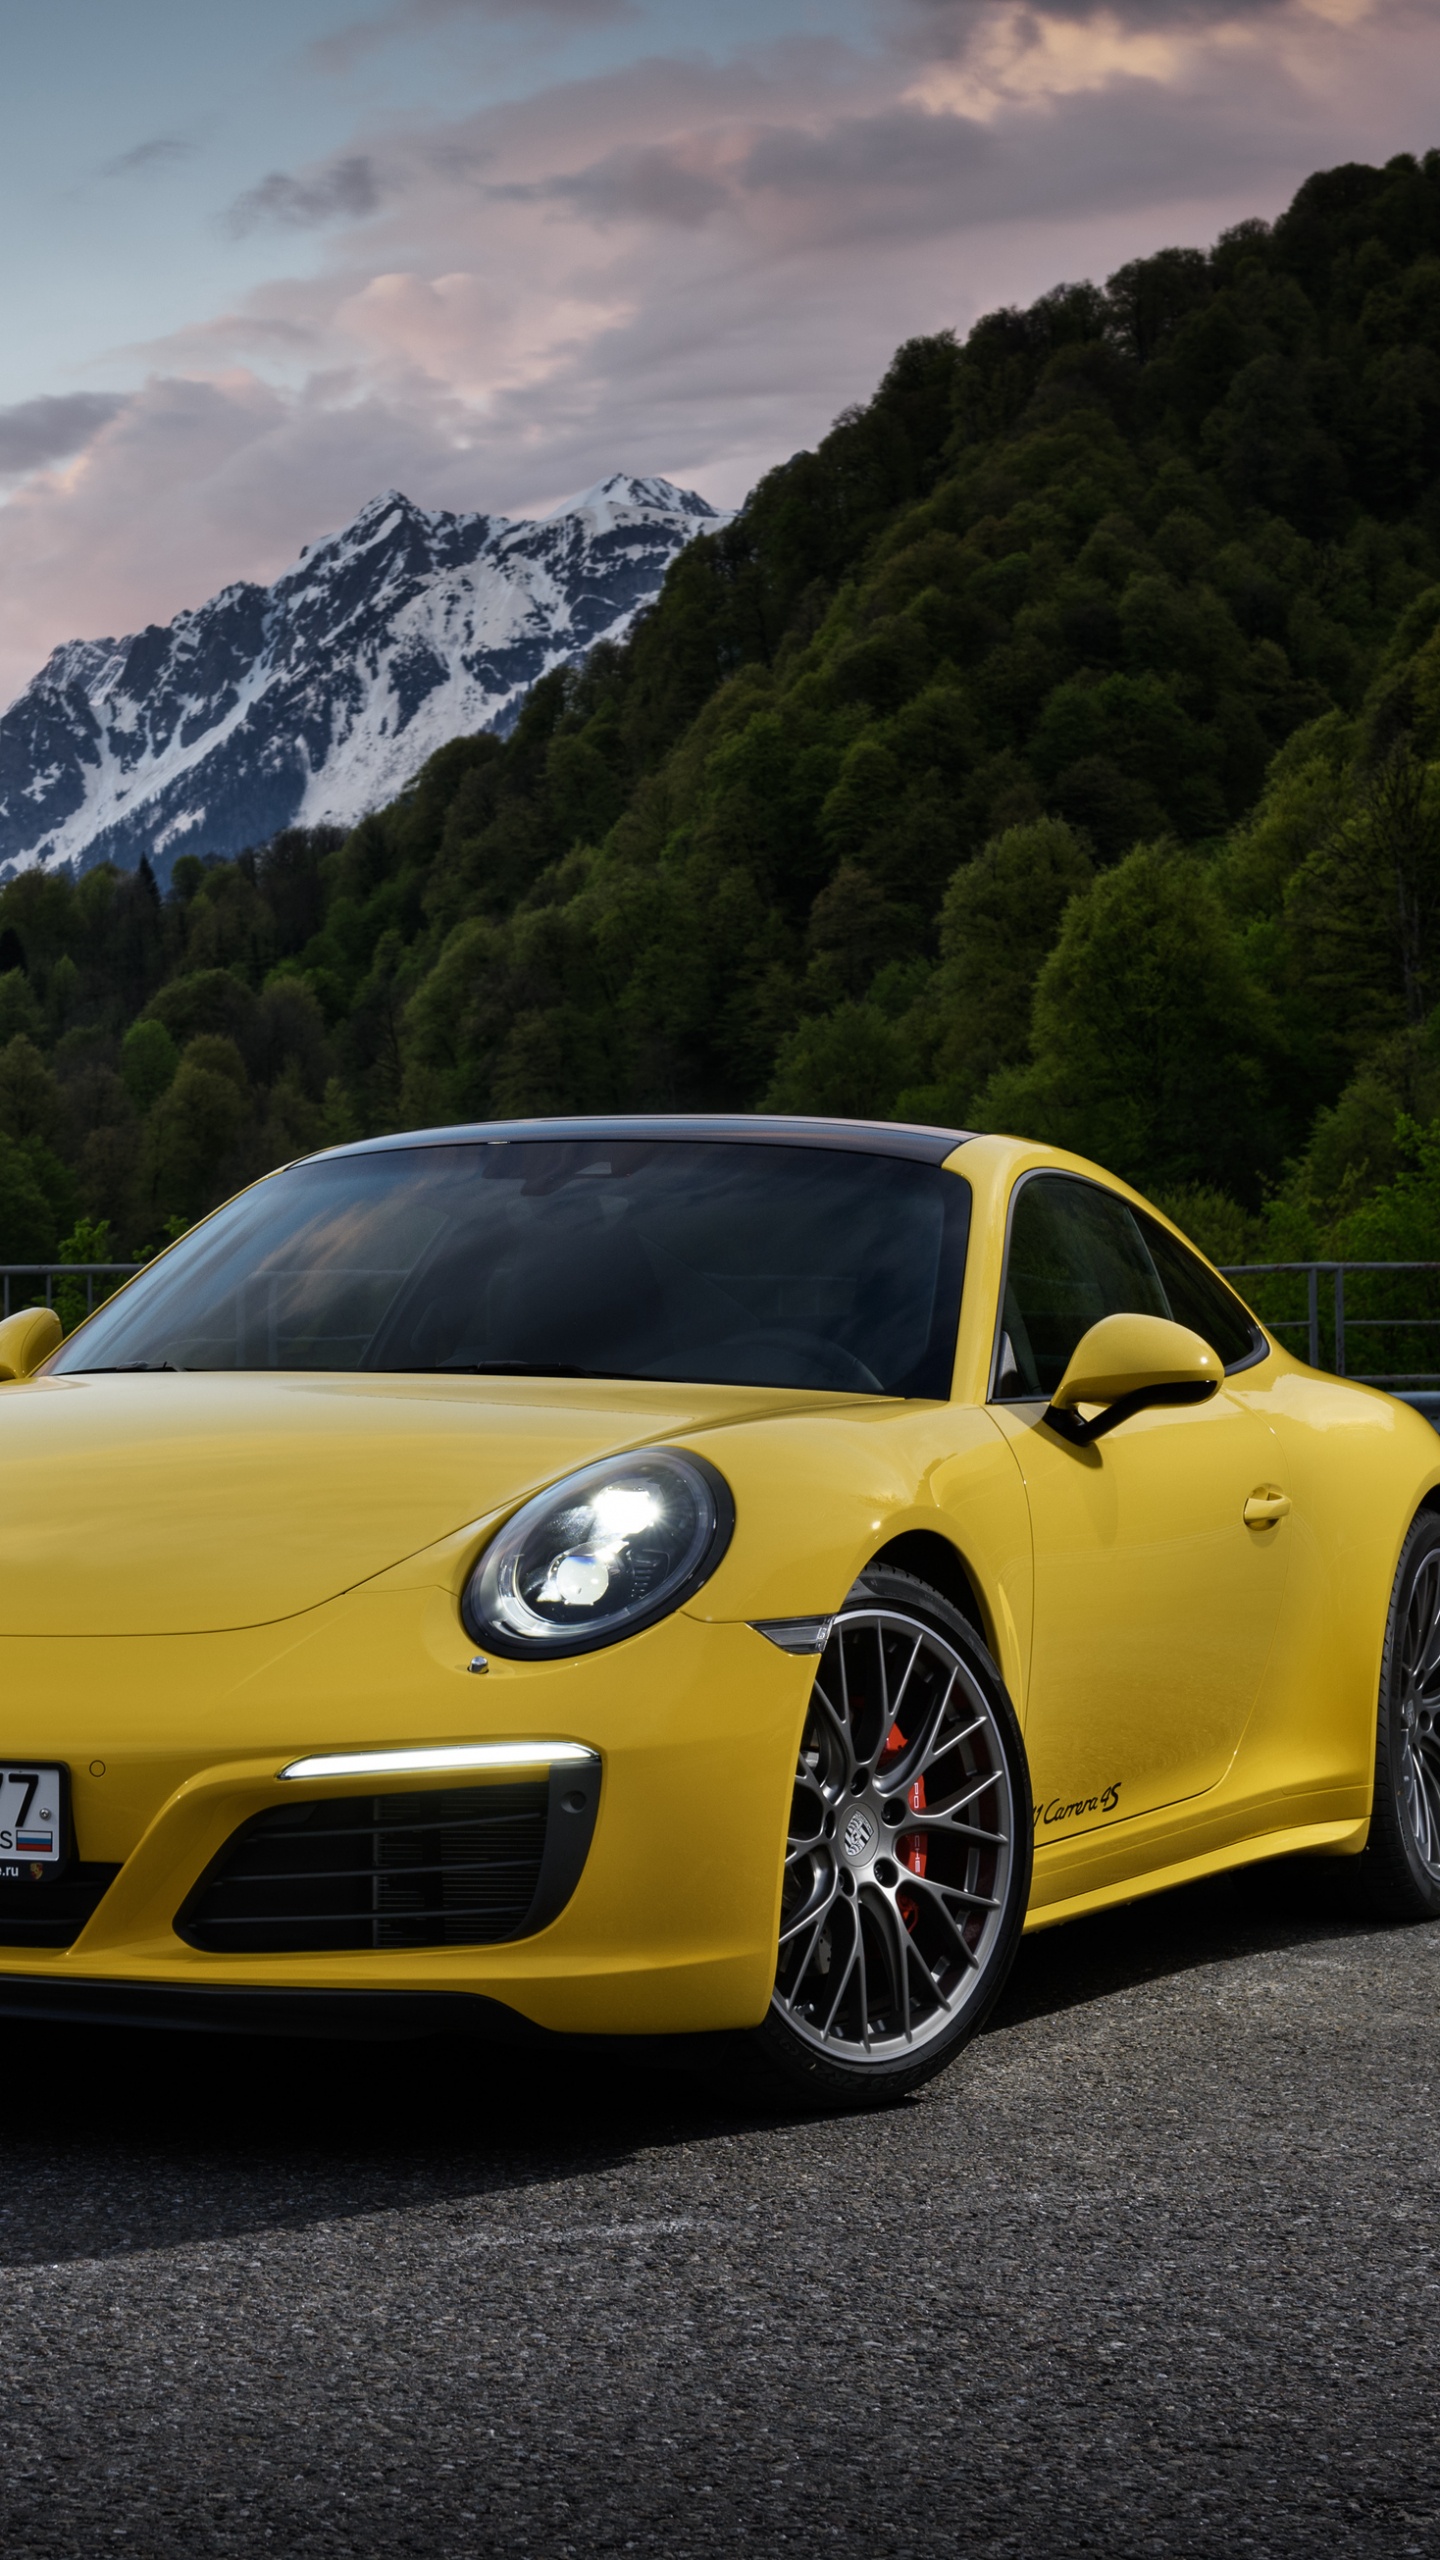 Gelber Porsche 911 Auf Der Straße in Der Nähe Des Berges Tagsüber. Wallpaper in 1440x2560 Resolution